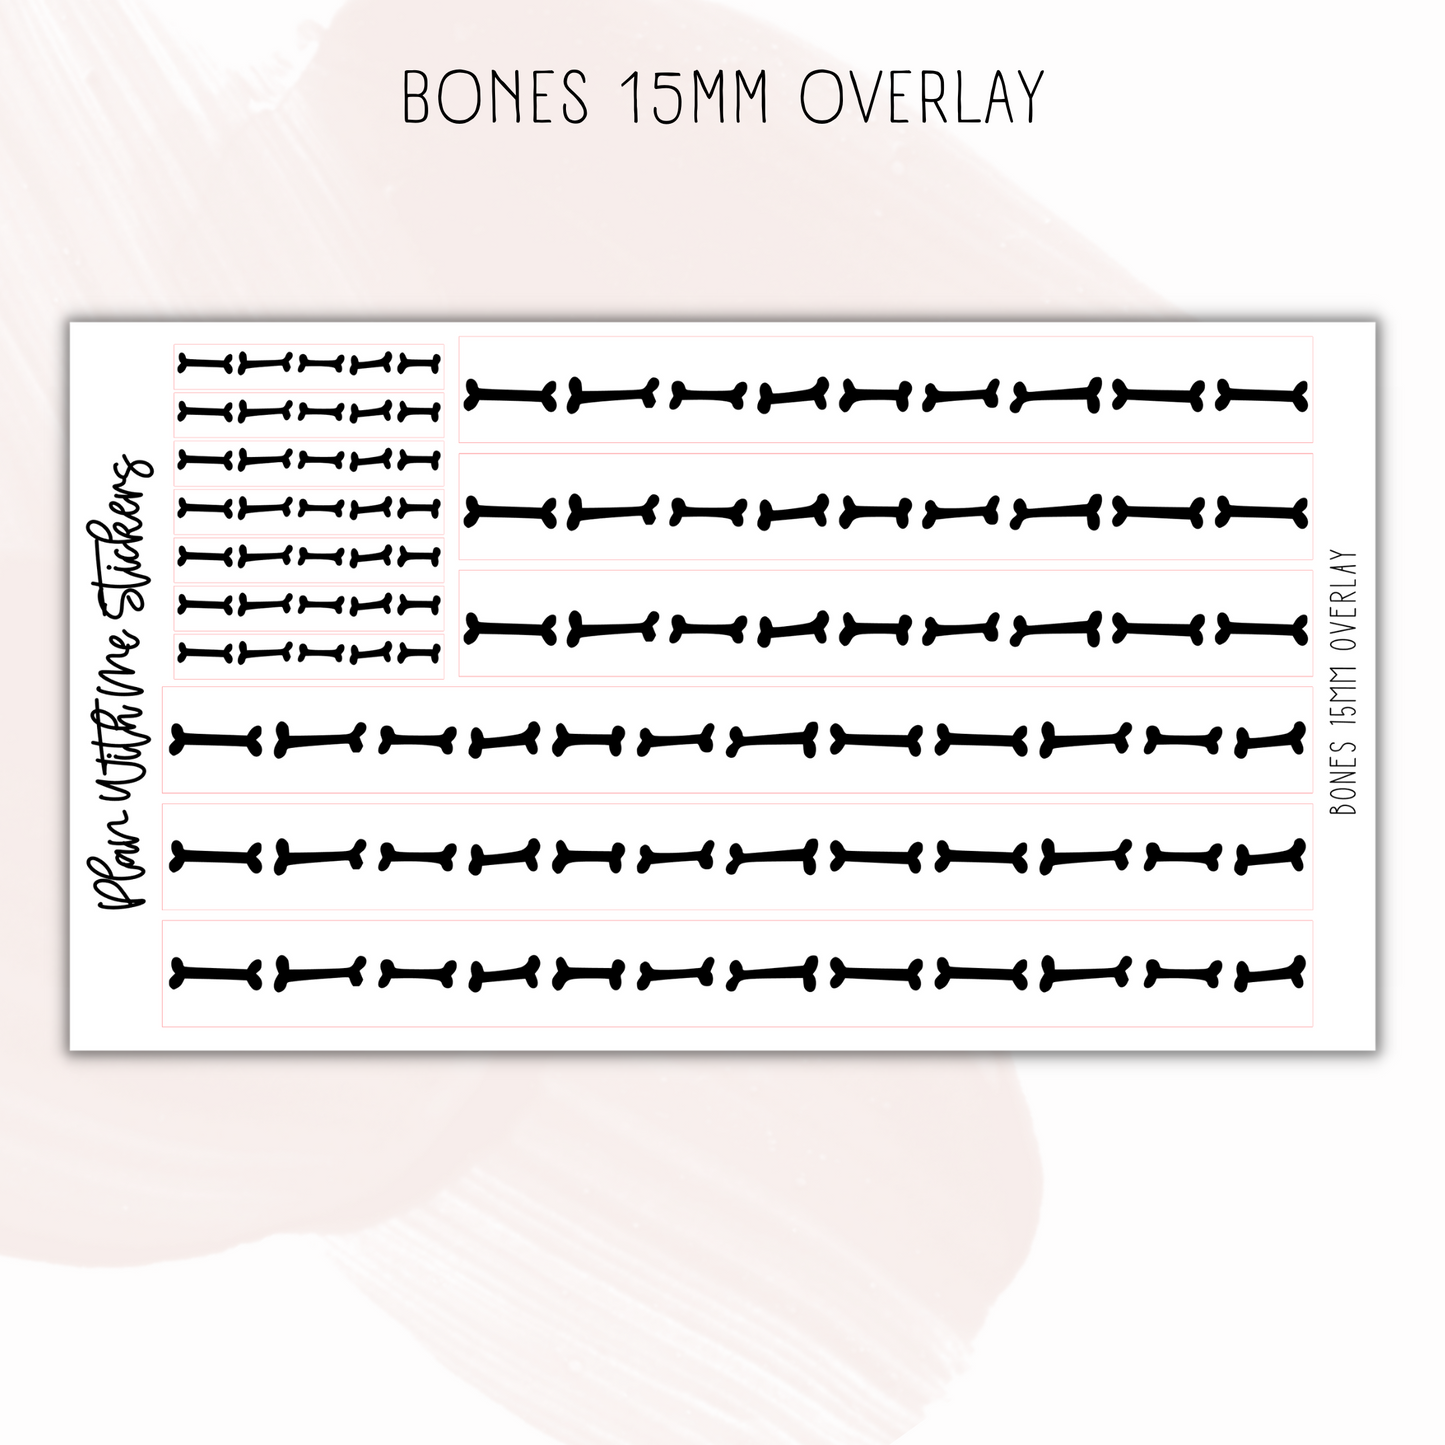 Bones 15mm Overlays